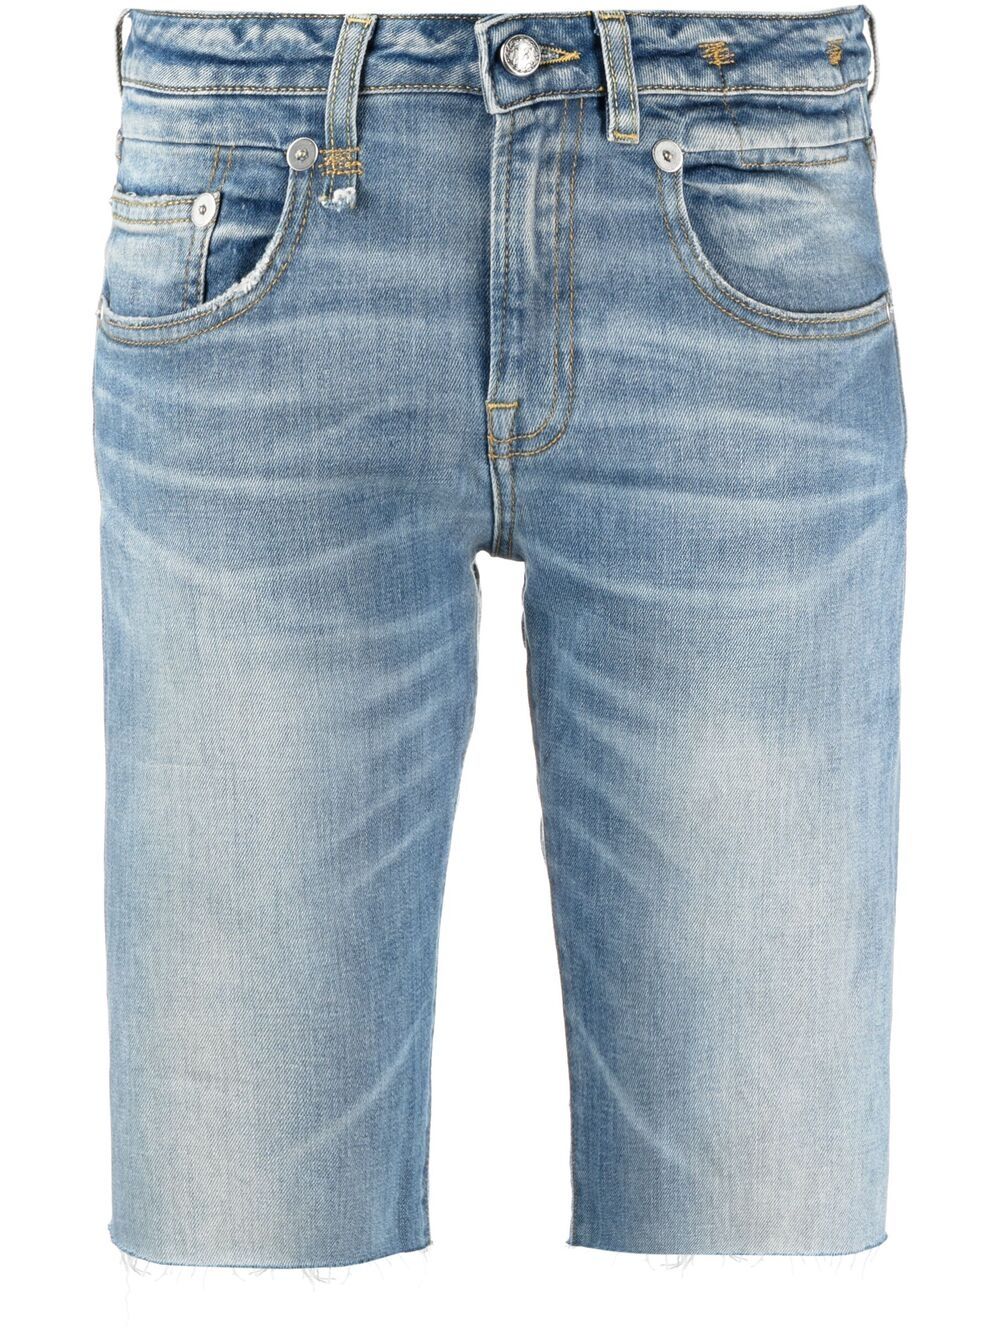 фото R13 джинсовые шорты